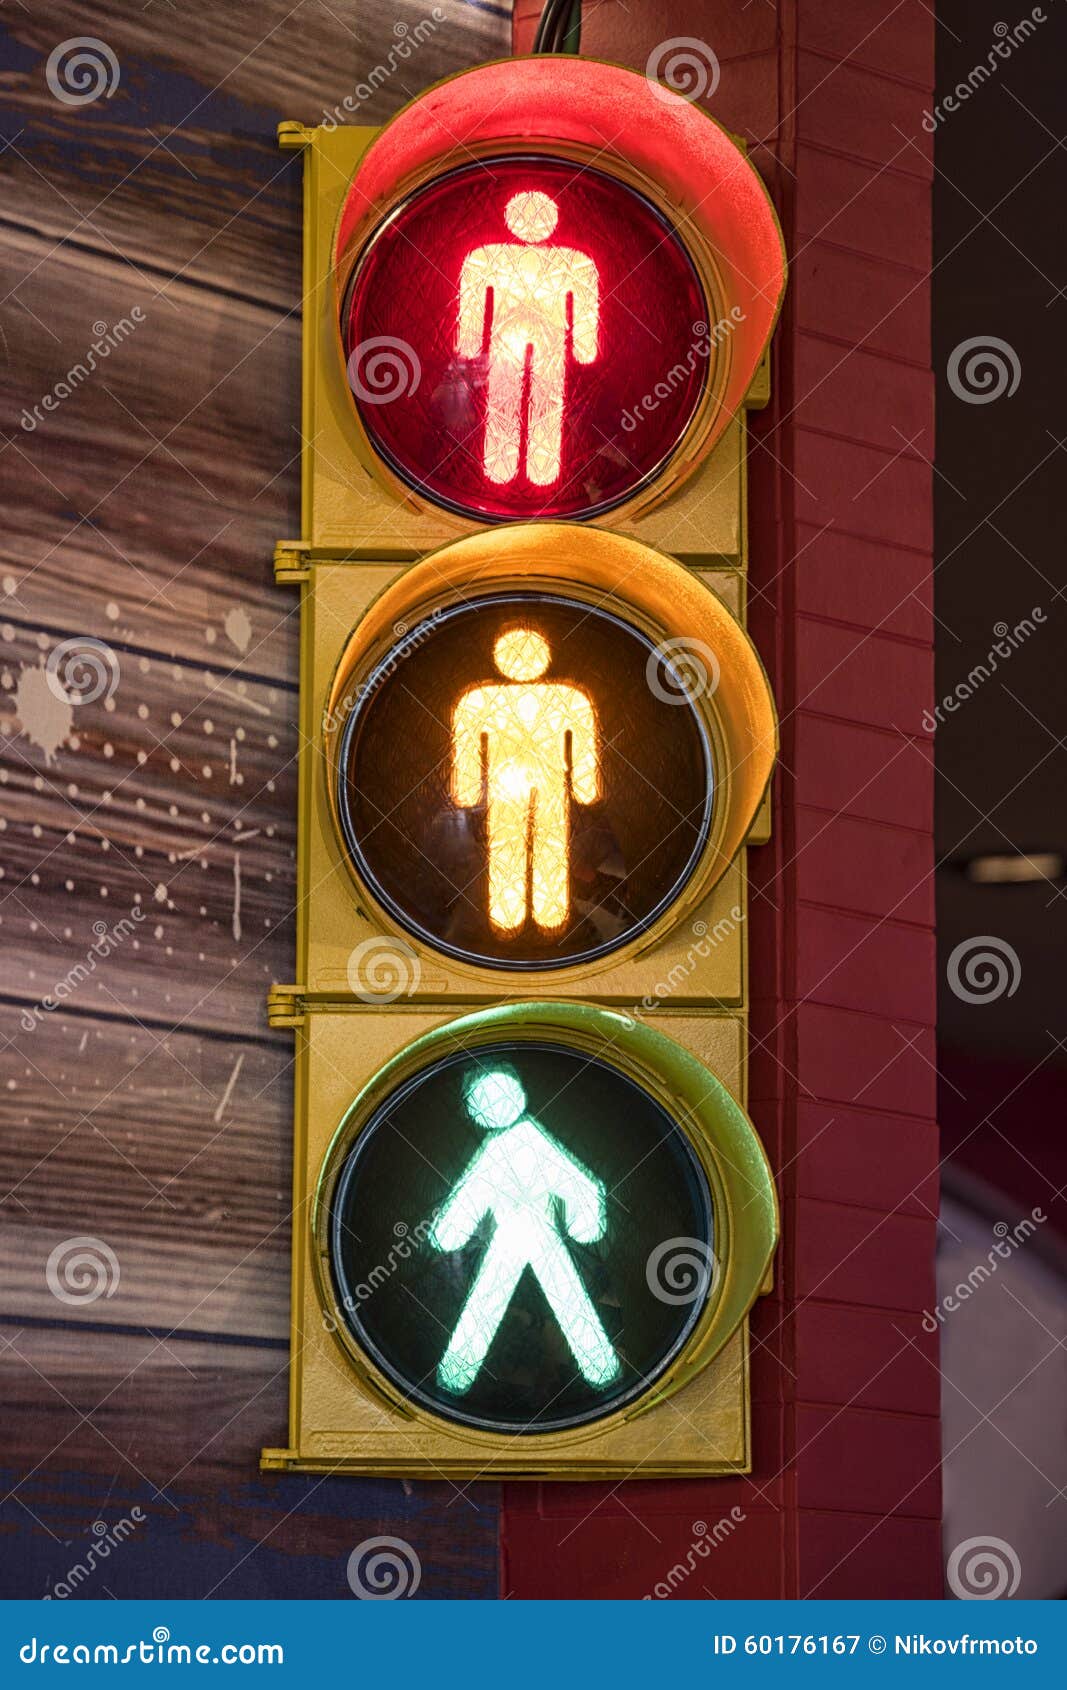 il semaforo in figura è un semaforo pedonale